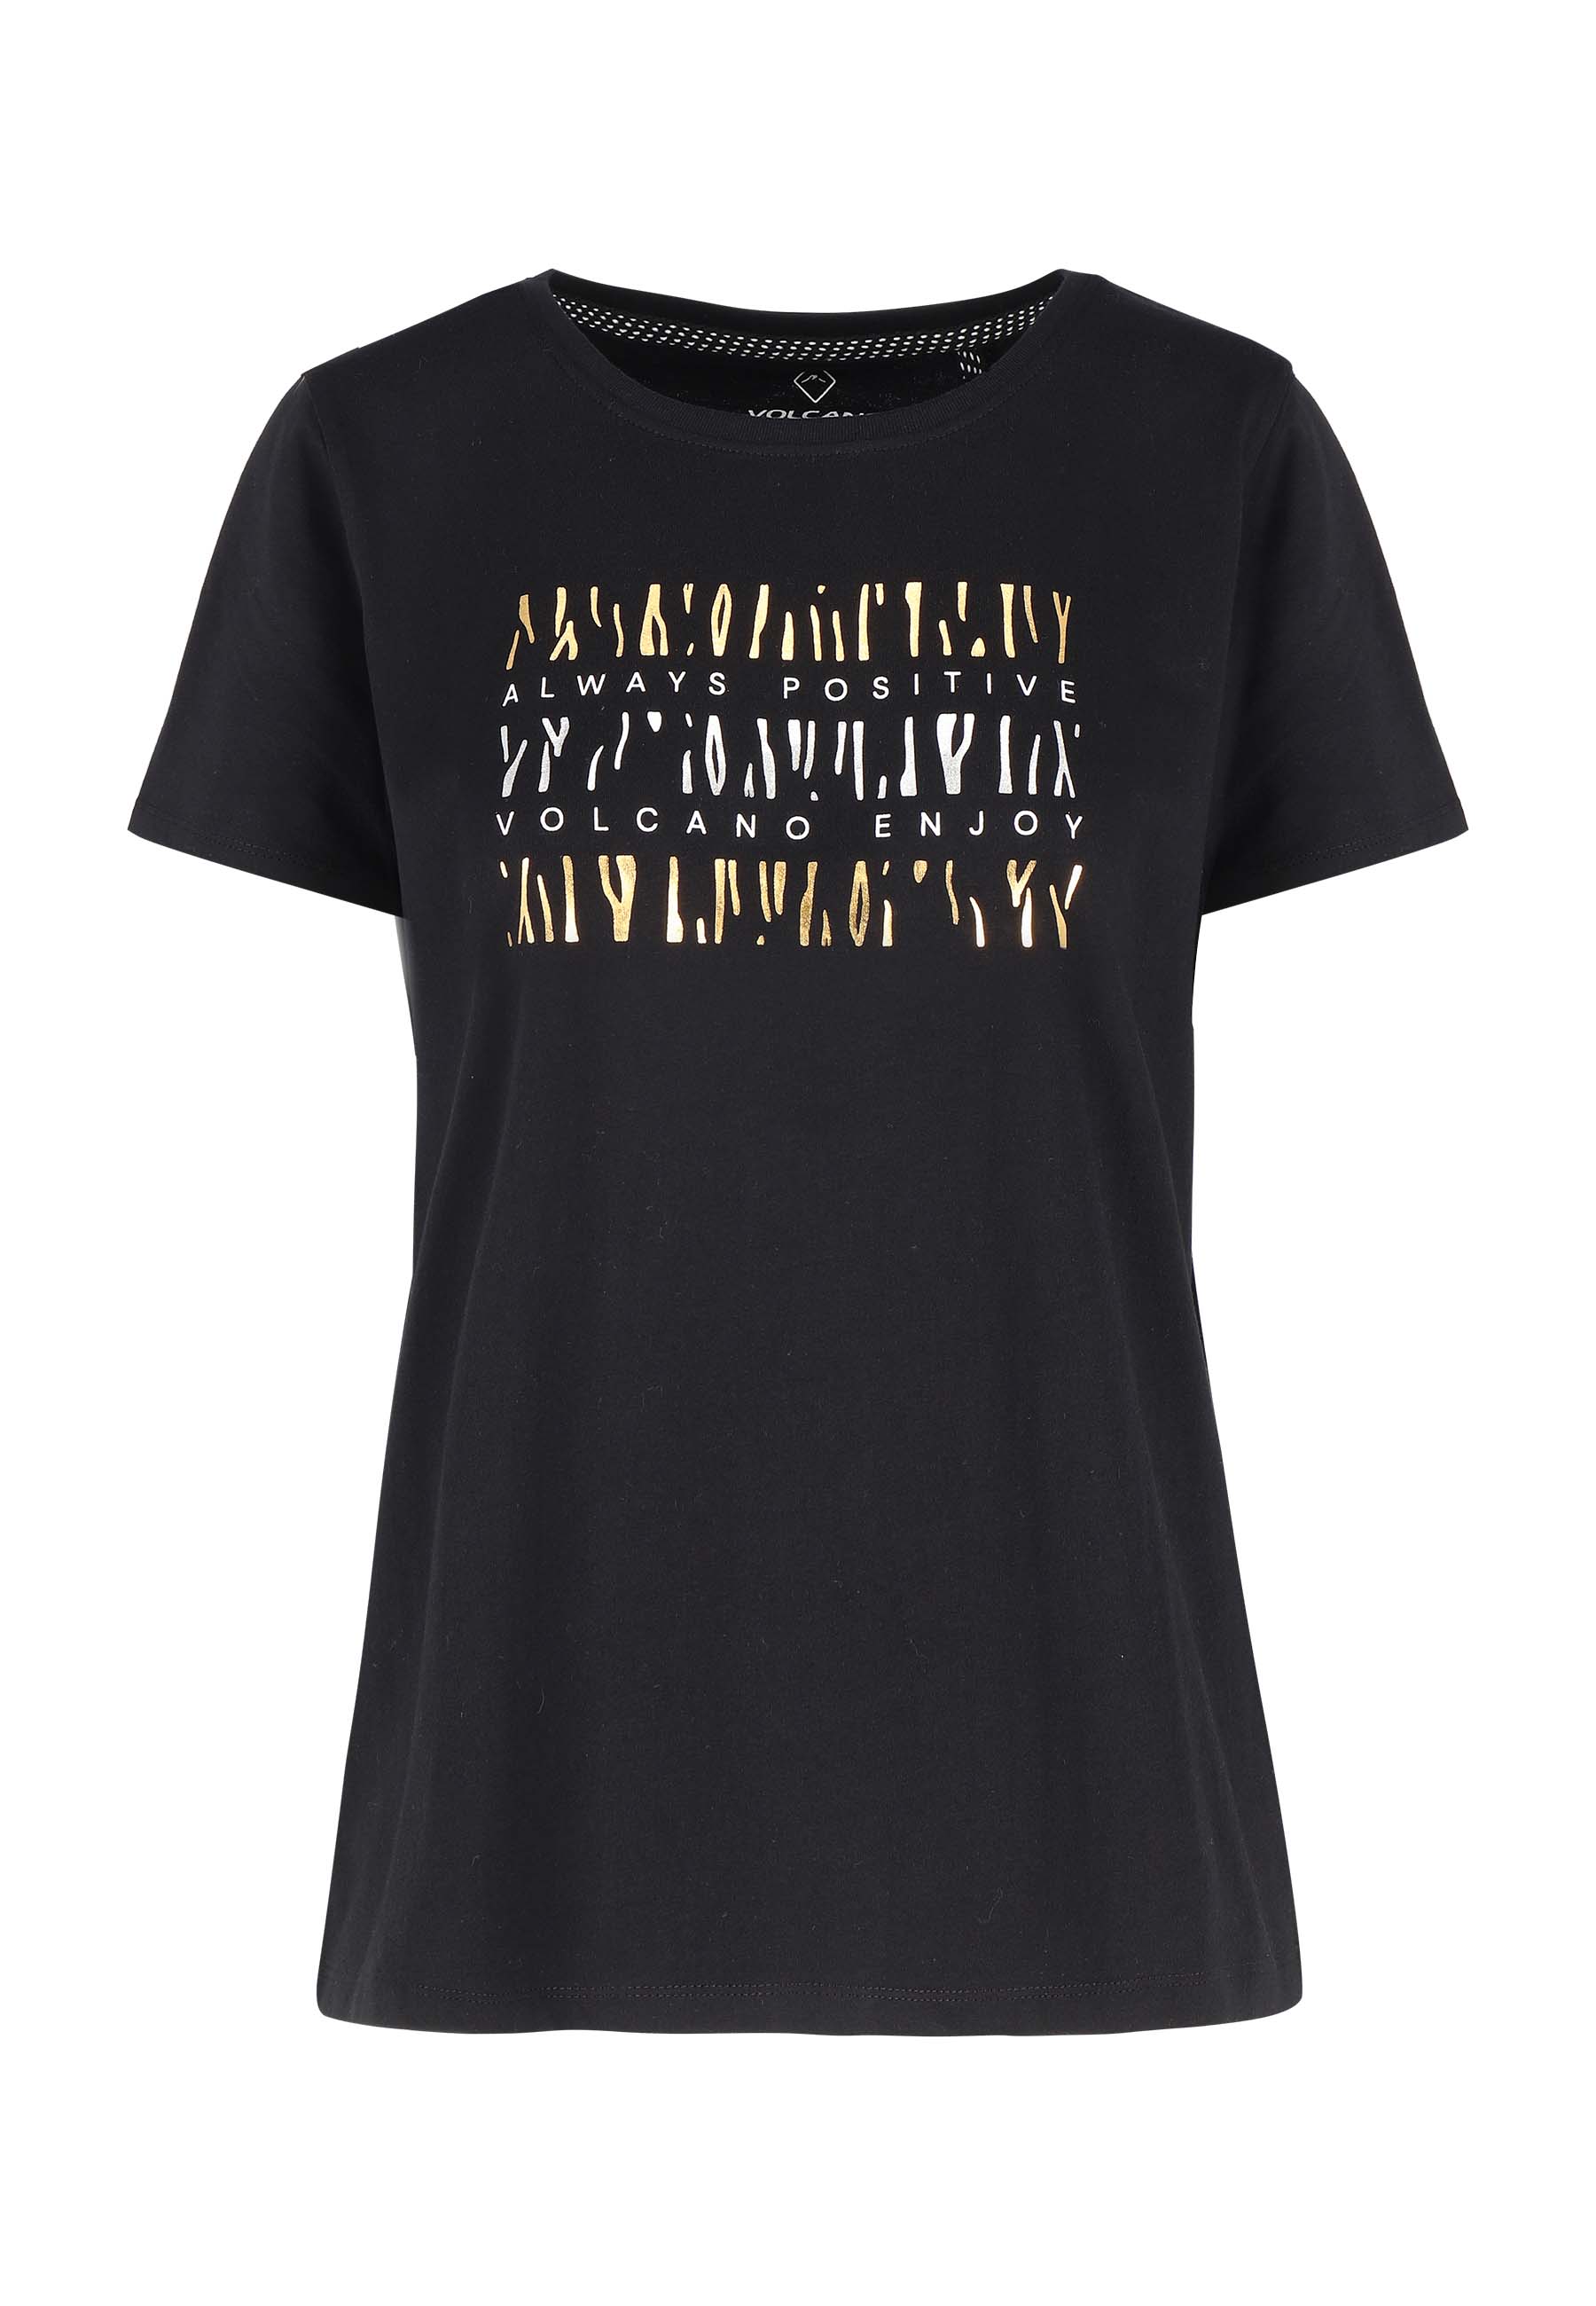 Volcano Woman's T-shirt T-Amanda L02141-S23